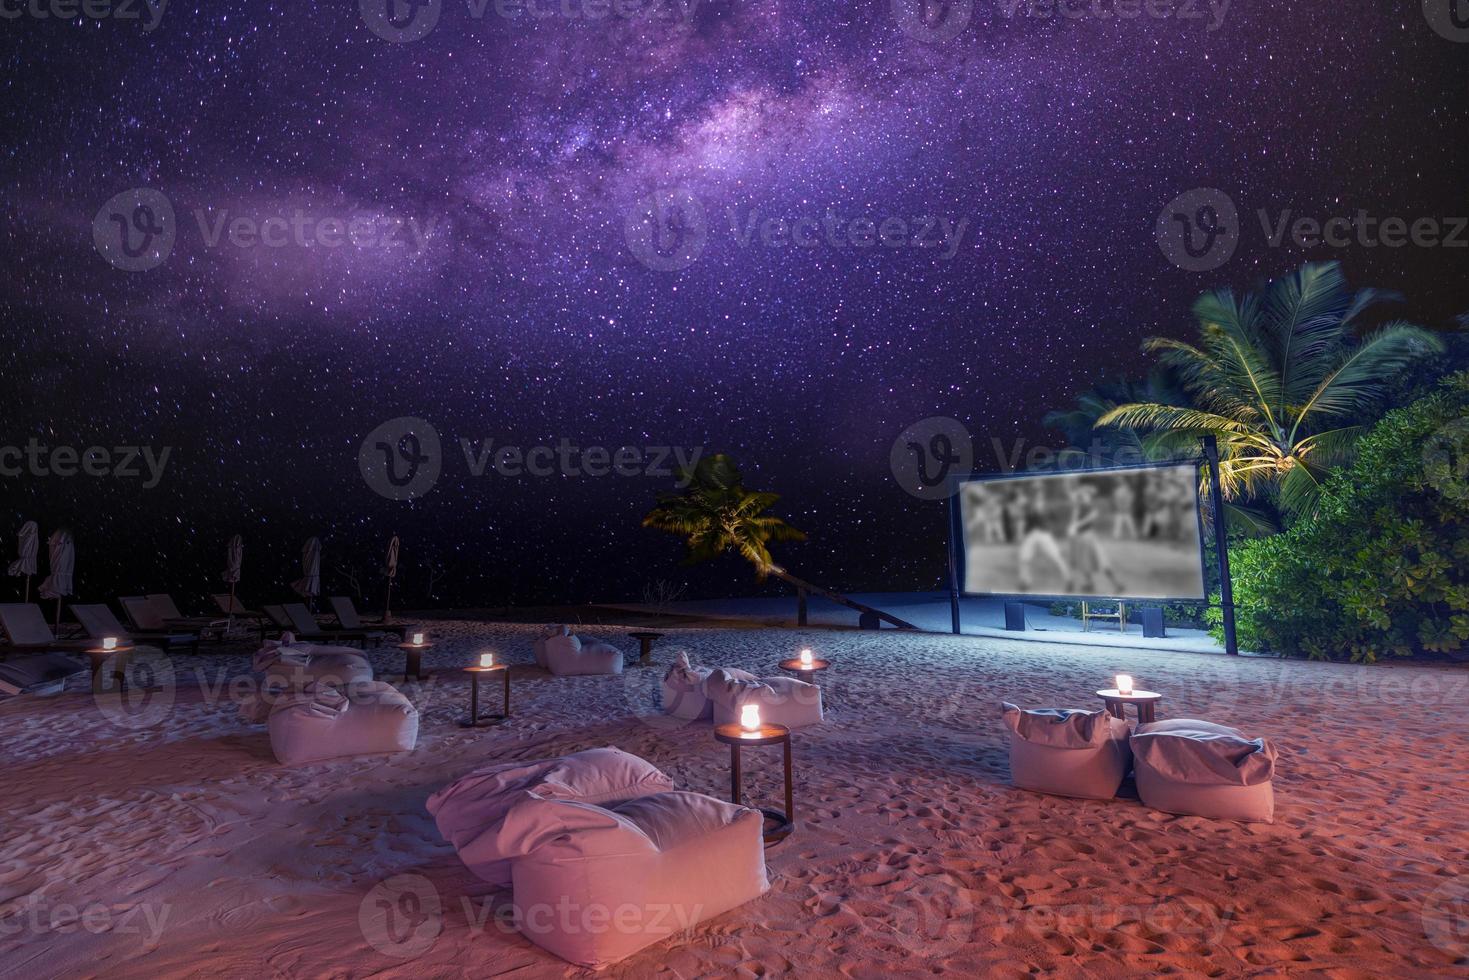 filmkväll på stjärnklar tropisk ö-strand. otroligt lugn och avslappnad naturskön utsikt över utomhusbio med Vintergatan och palmer med mjukt levande ljus. sommar familjesemester, lyxig livsstil foto